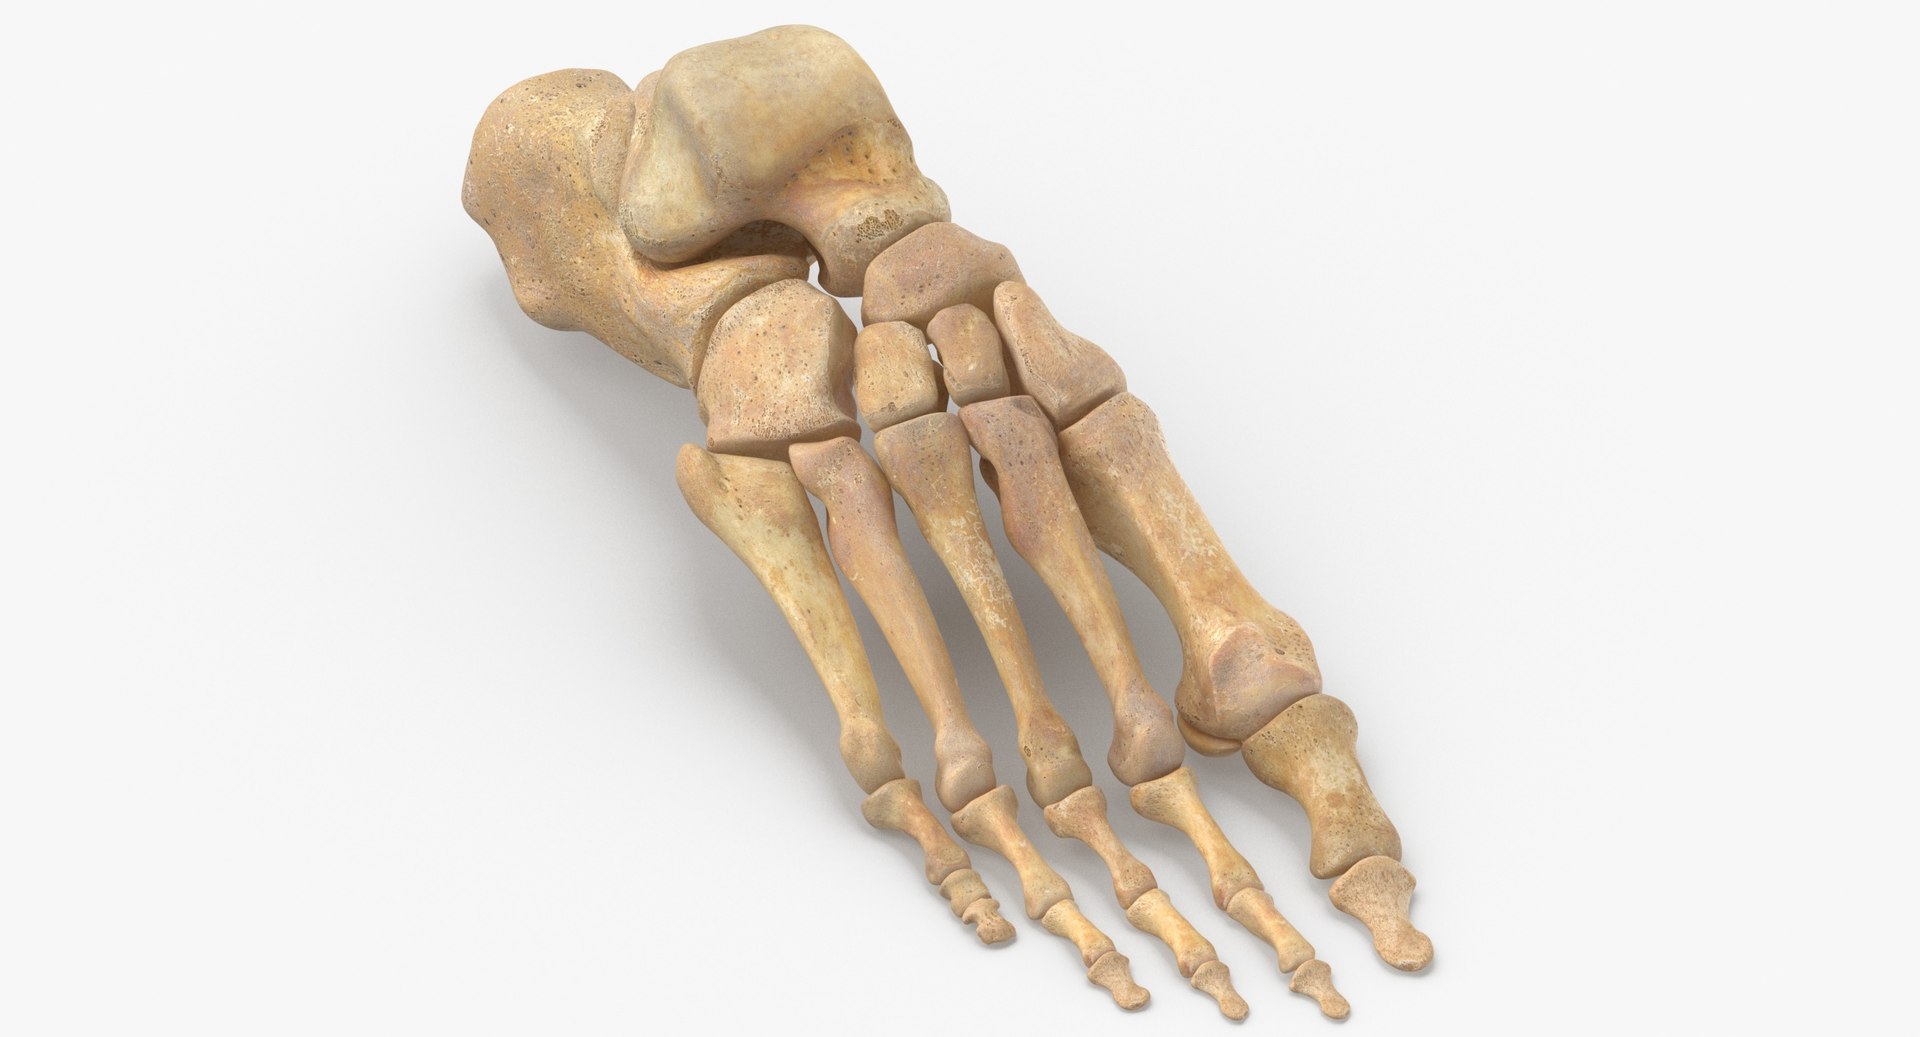 Human foot bones anatomy 3D model - TurboSquid 1558150